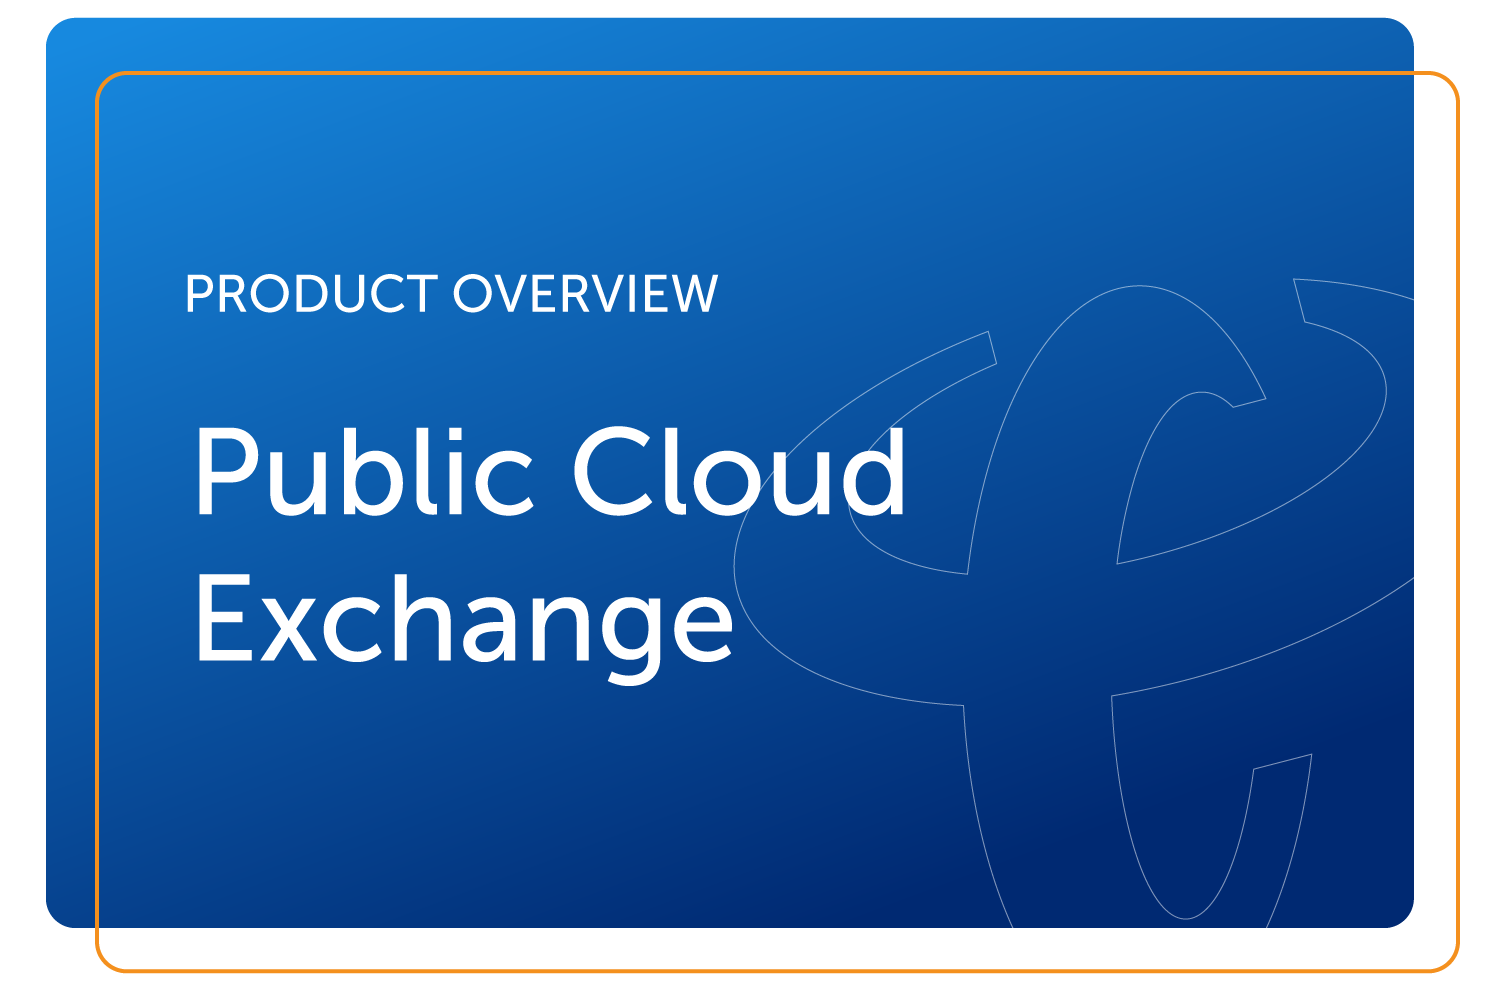 Public Cloud Exchange